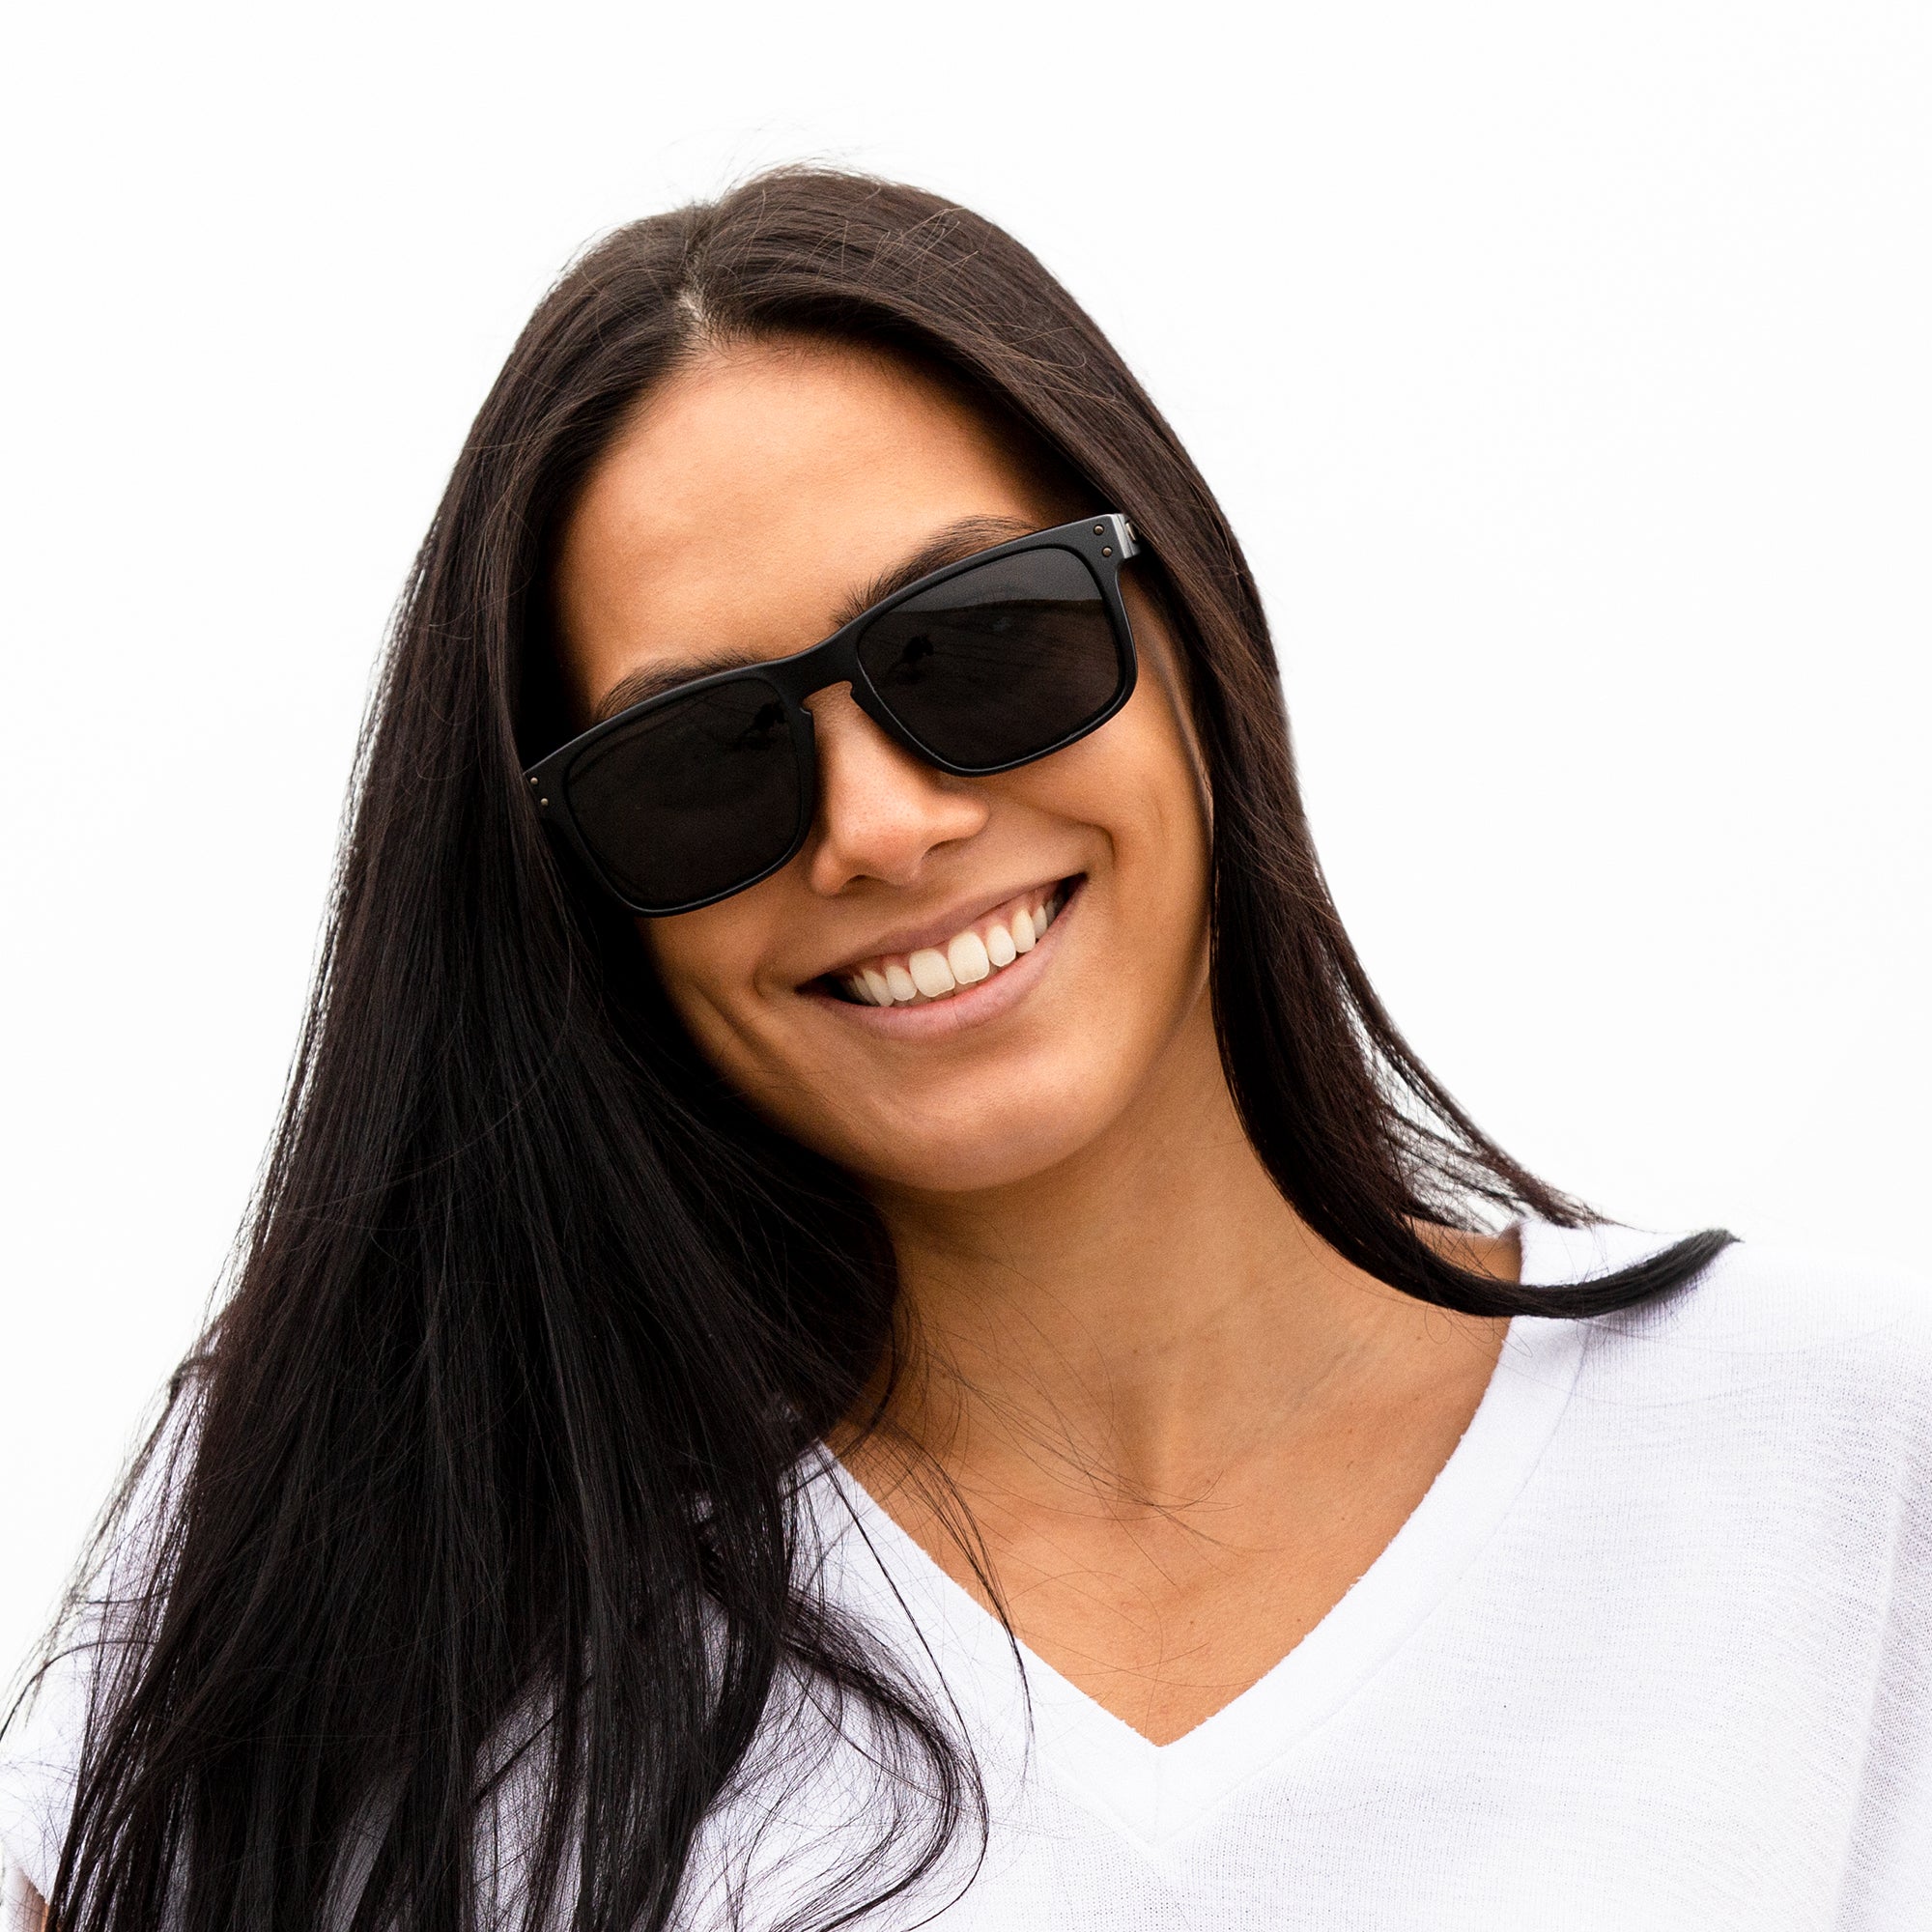 Buy Classic REVO Full Mirrored Aviator Sunglasses (Single Pair) at Amazon.in